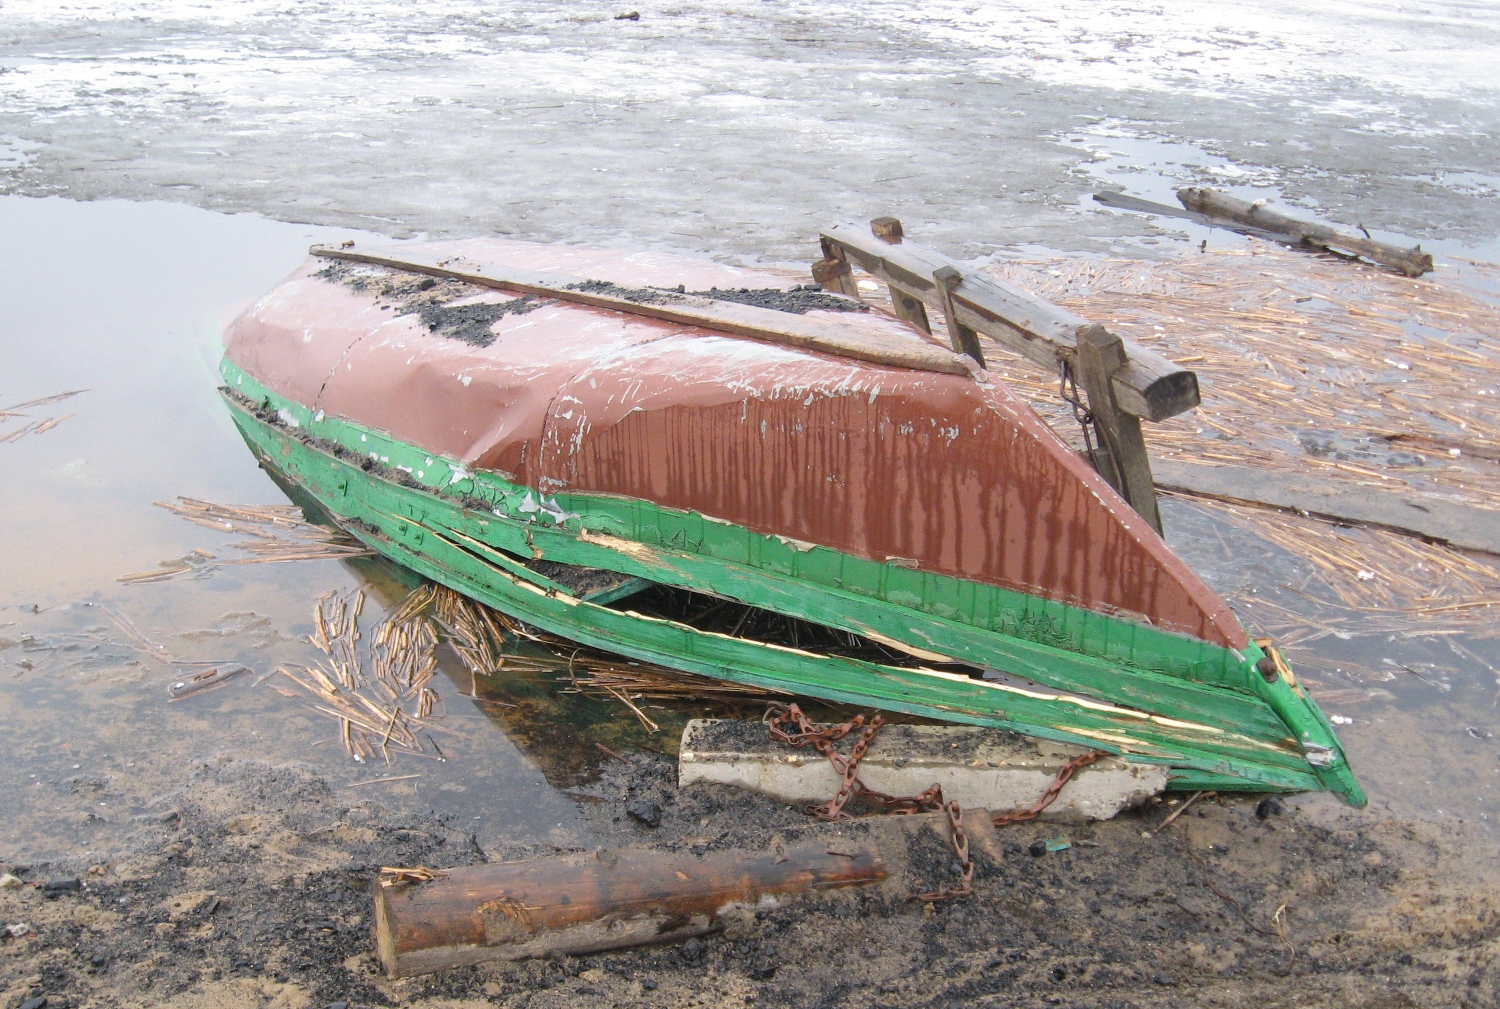 Разбившаяся лодка. Разбитая лодка. Разломанная лодка. Сломанная деревянная лодка. Разбитая шлюпка.